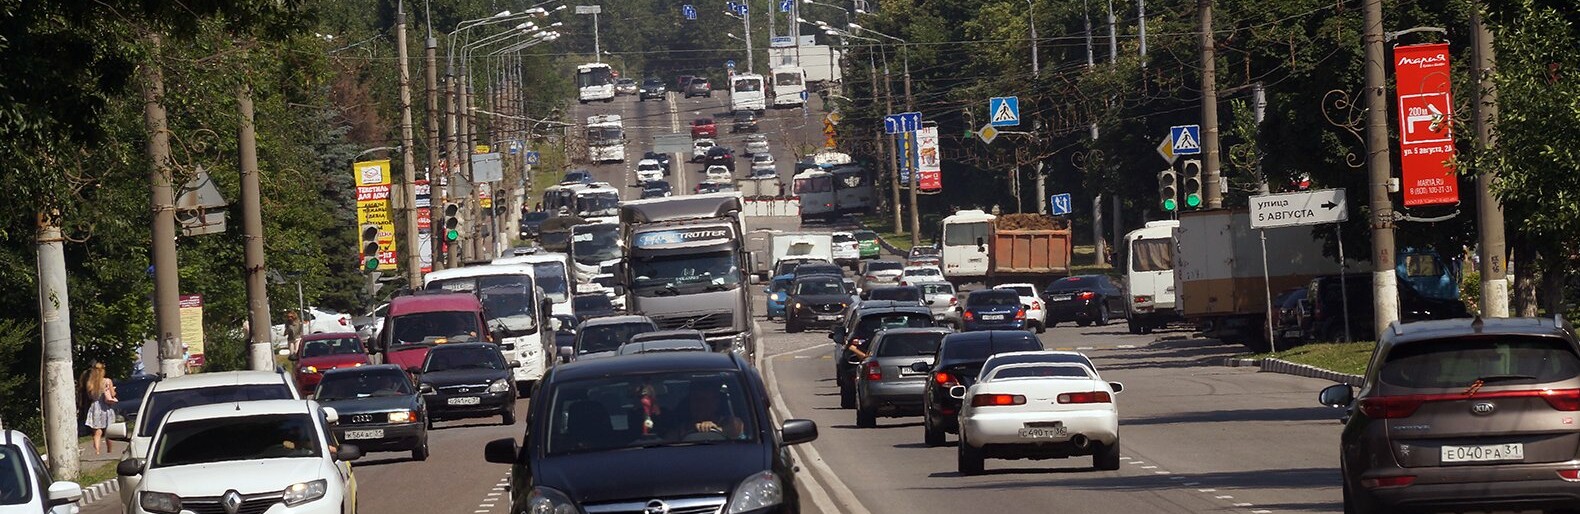 Сколько машин и водителей в автопарке мэрии Белгорода после реформ Галдуна